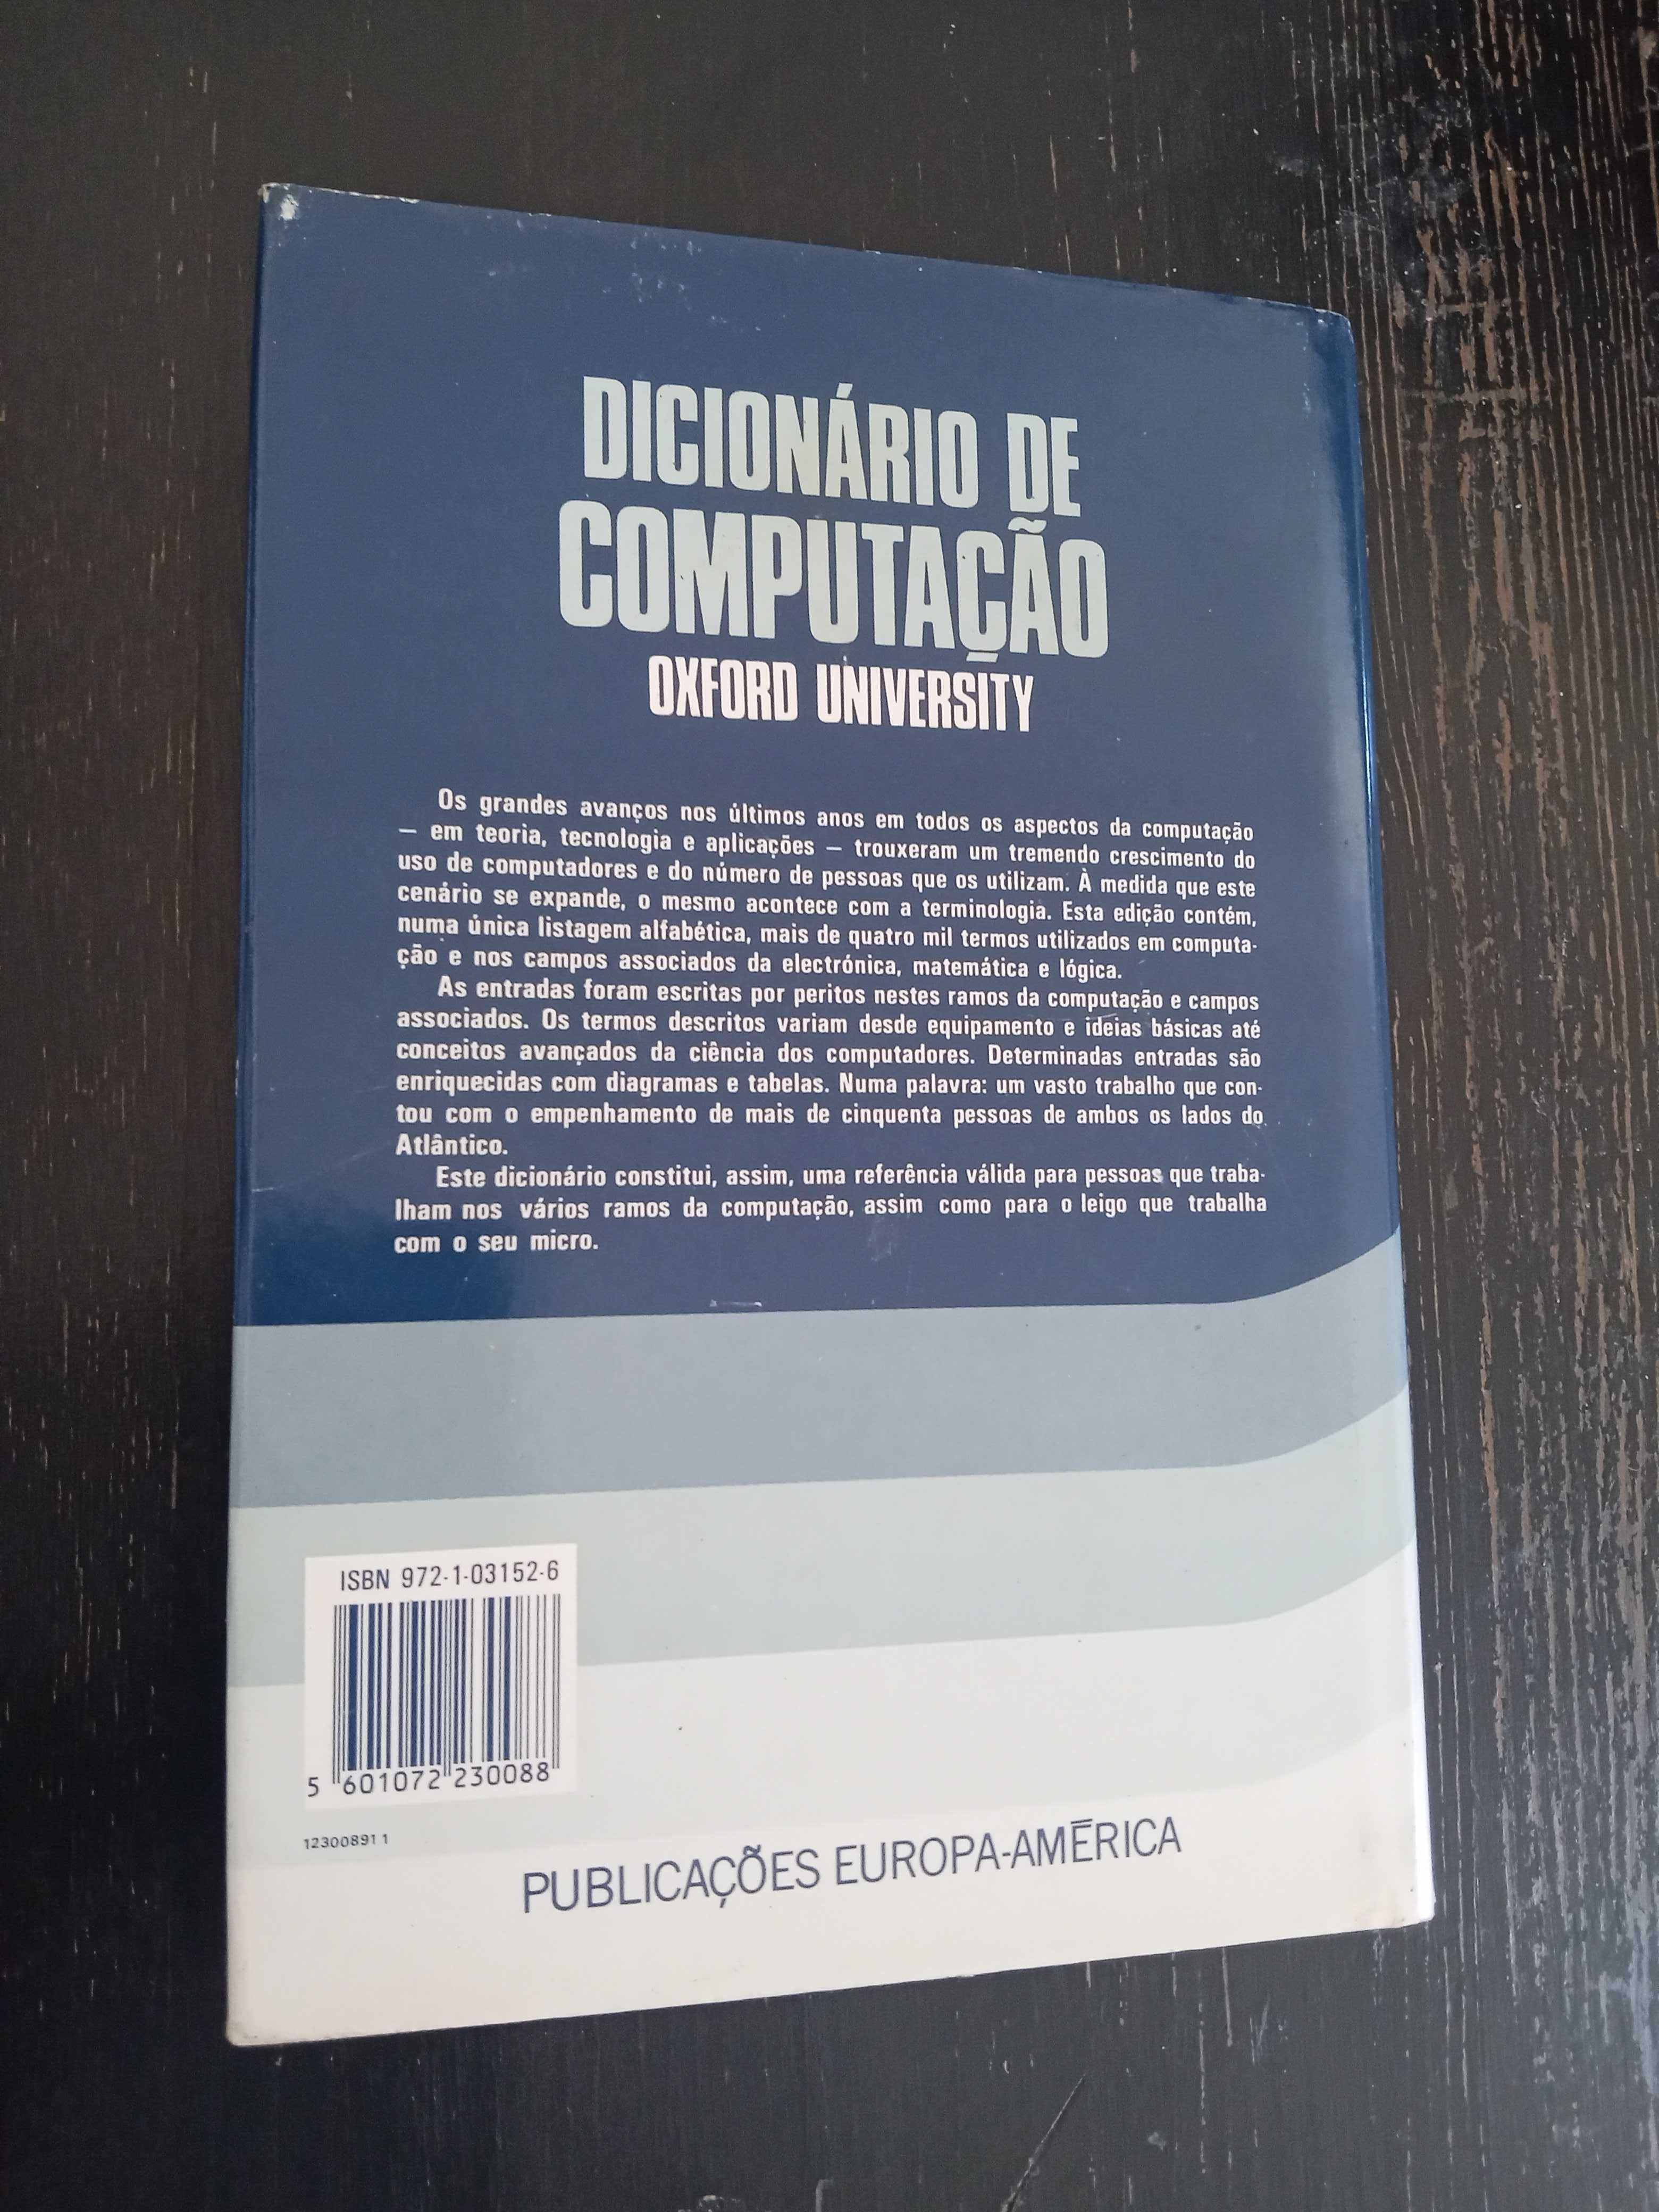 Dicionário de Computação Oxford University Public Europa-América, 1986